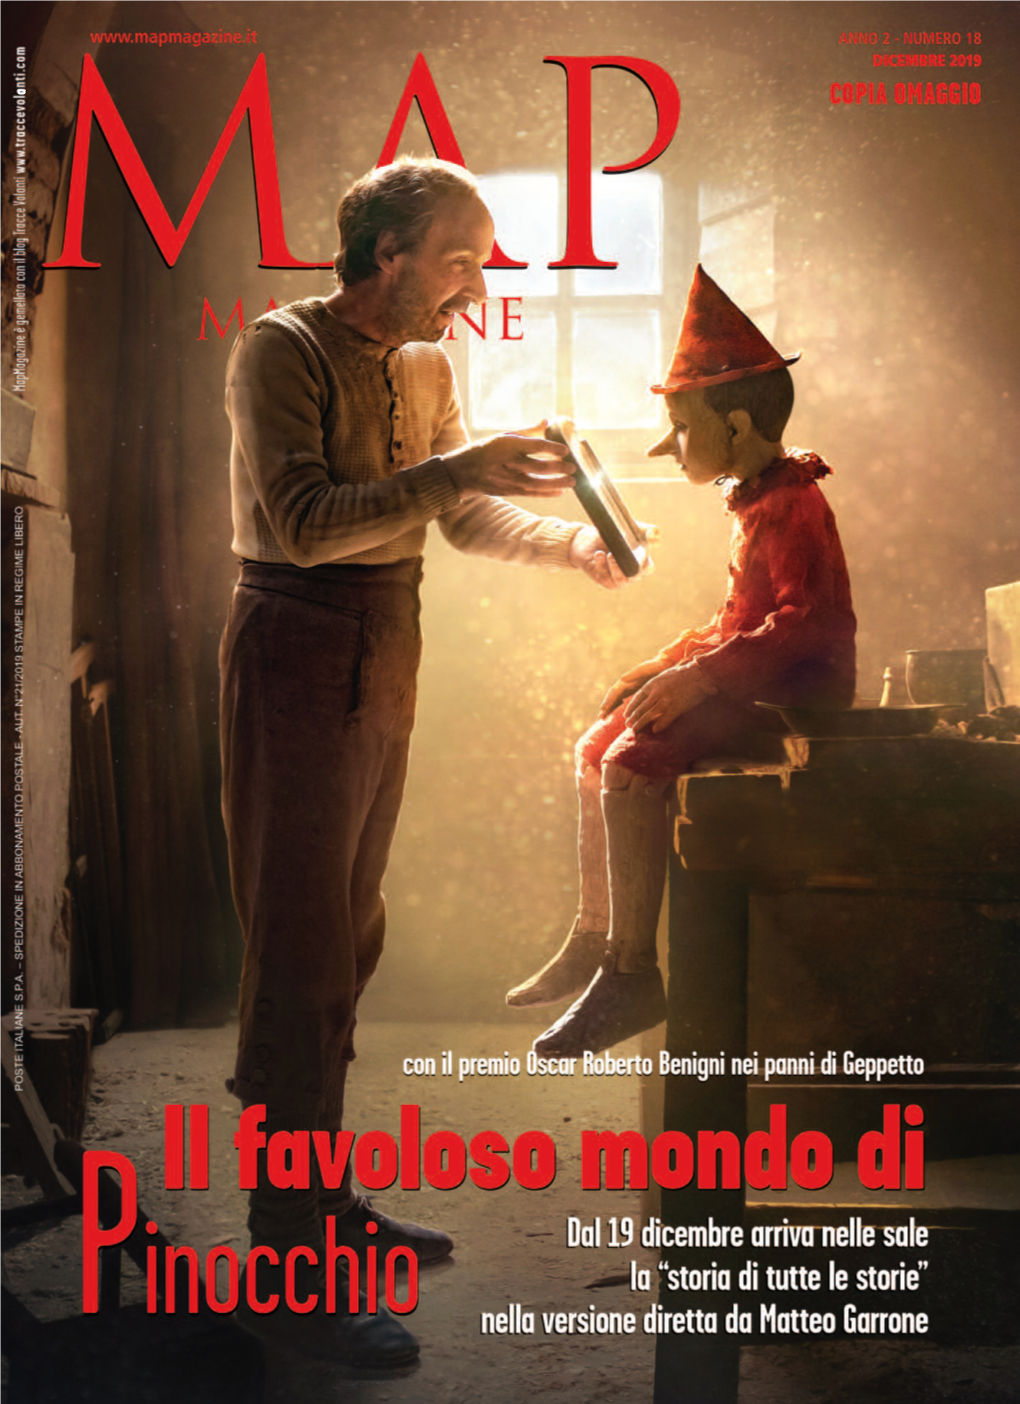 Torna Al Cinema Pinocchio, Dal 19 Dicembre, in Un Nuovo Adattamento Firmato Da Matteo